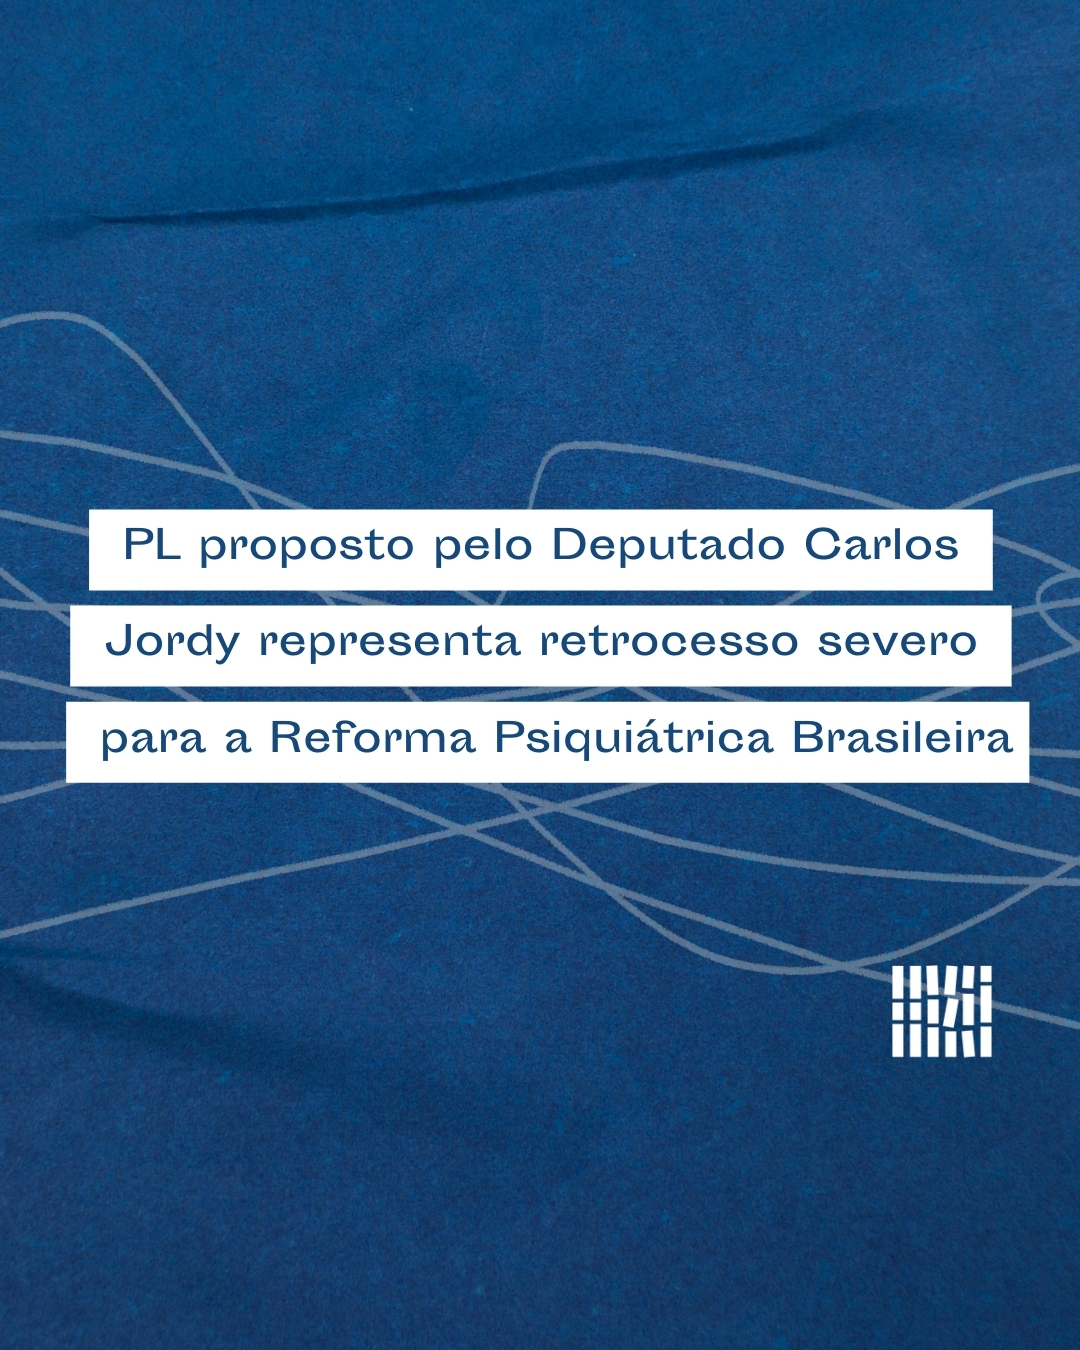 PL proposto pelo Deputado Carlos Jordy representa um retrocesso severo para a Reforma Psiquiátrica Brasileira 